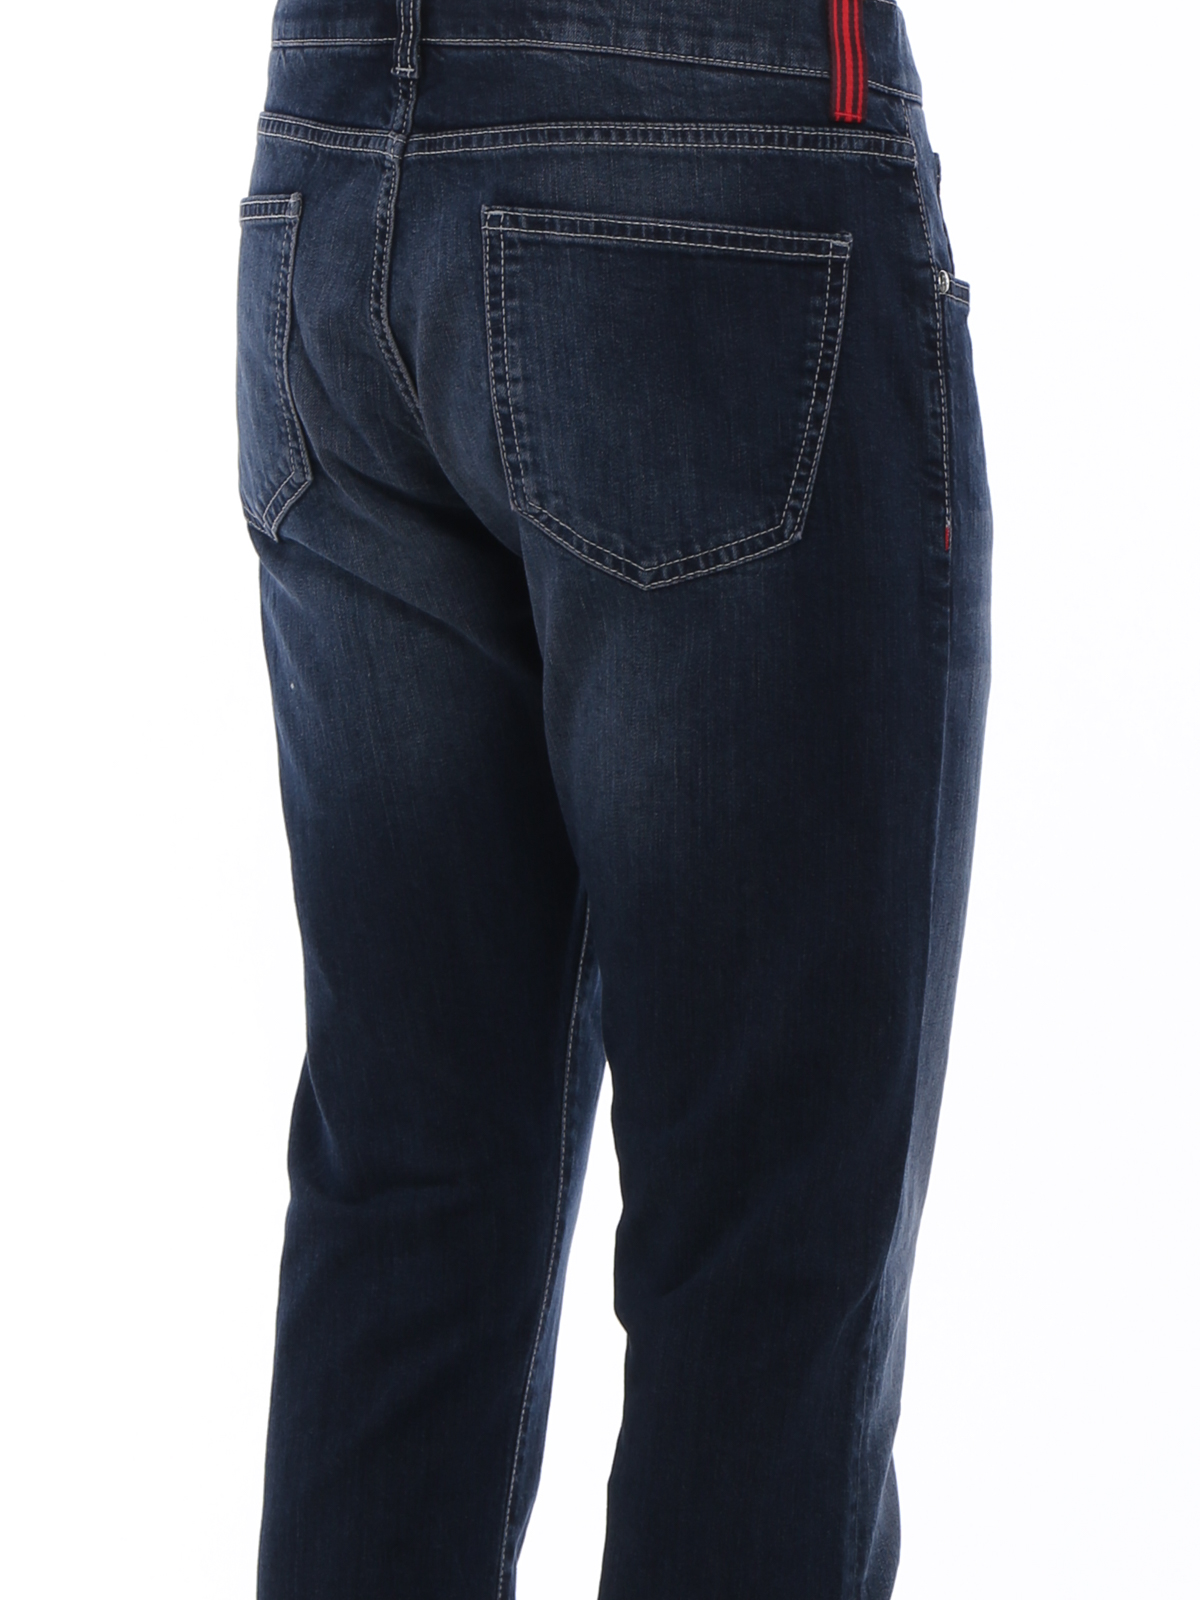 Straight jeans - Faded stretch denim jeans - DCS002DJ078920